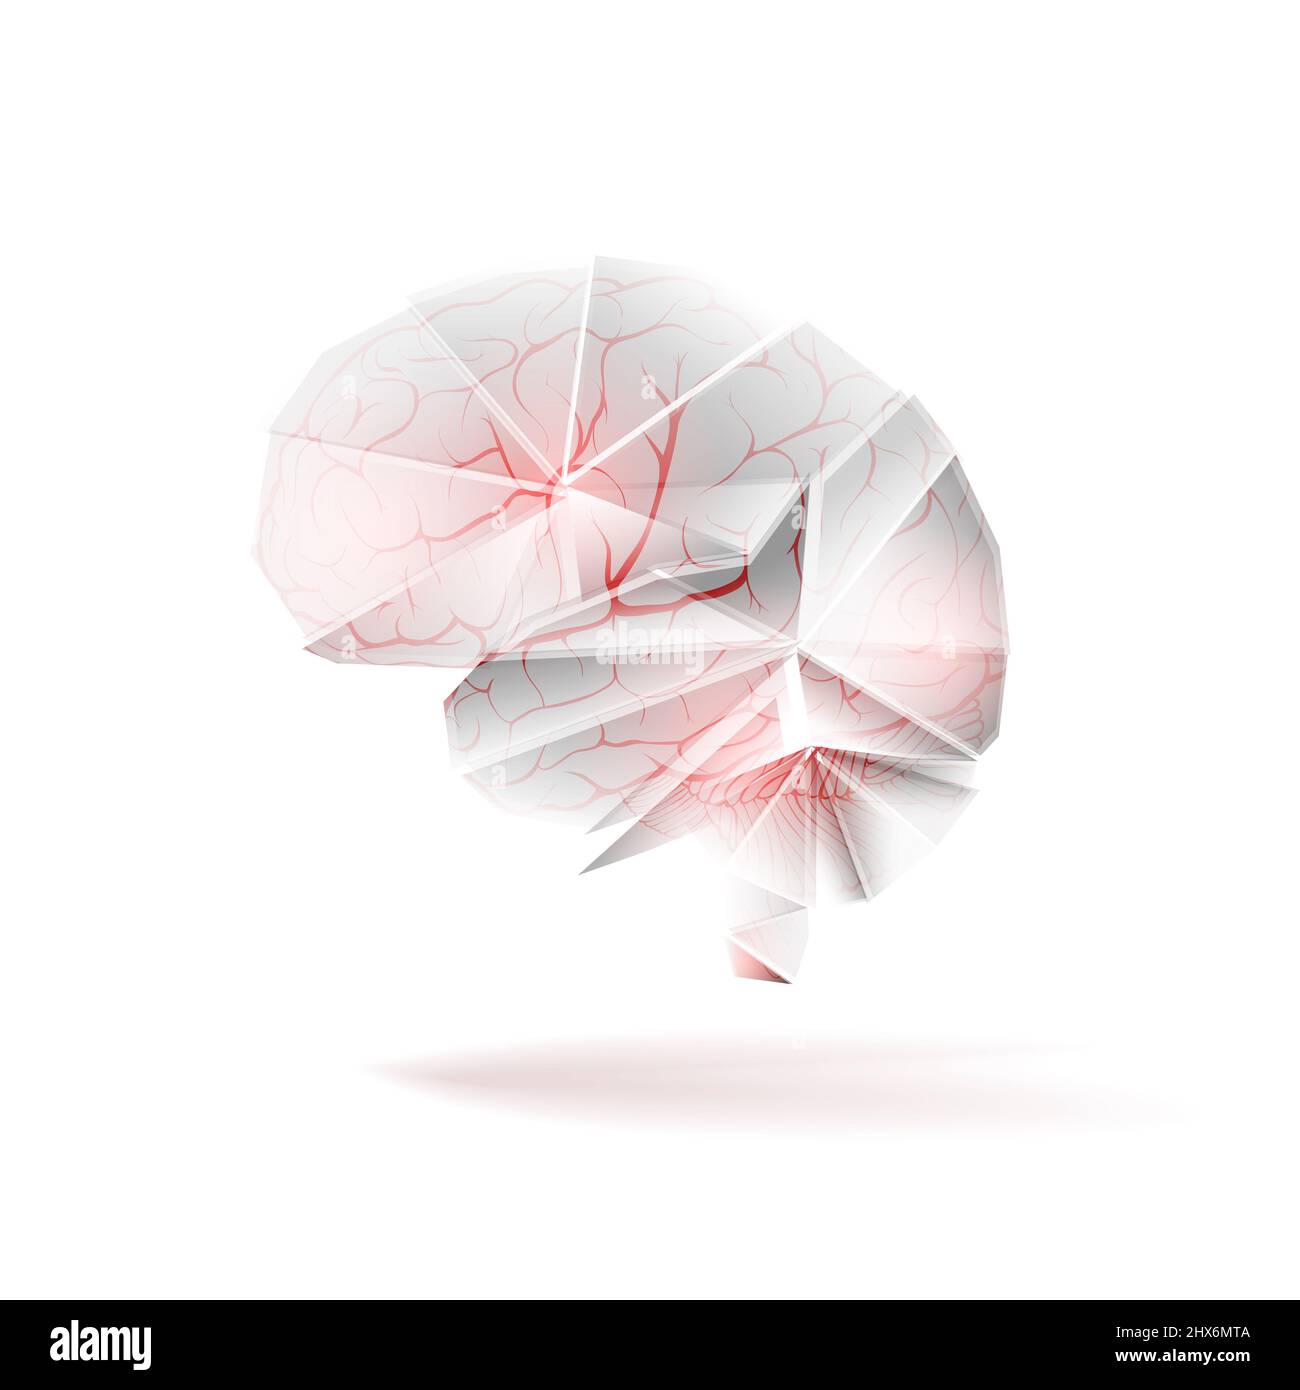 Blutgefäße (Arterien) im abstrakten menschlichen Gehirn als zerebrovaskuläres Konzept. Isoliert auf weißem Hintergrund. Abbildung Stockfoto